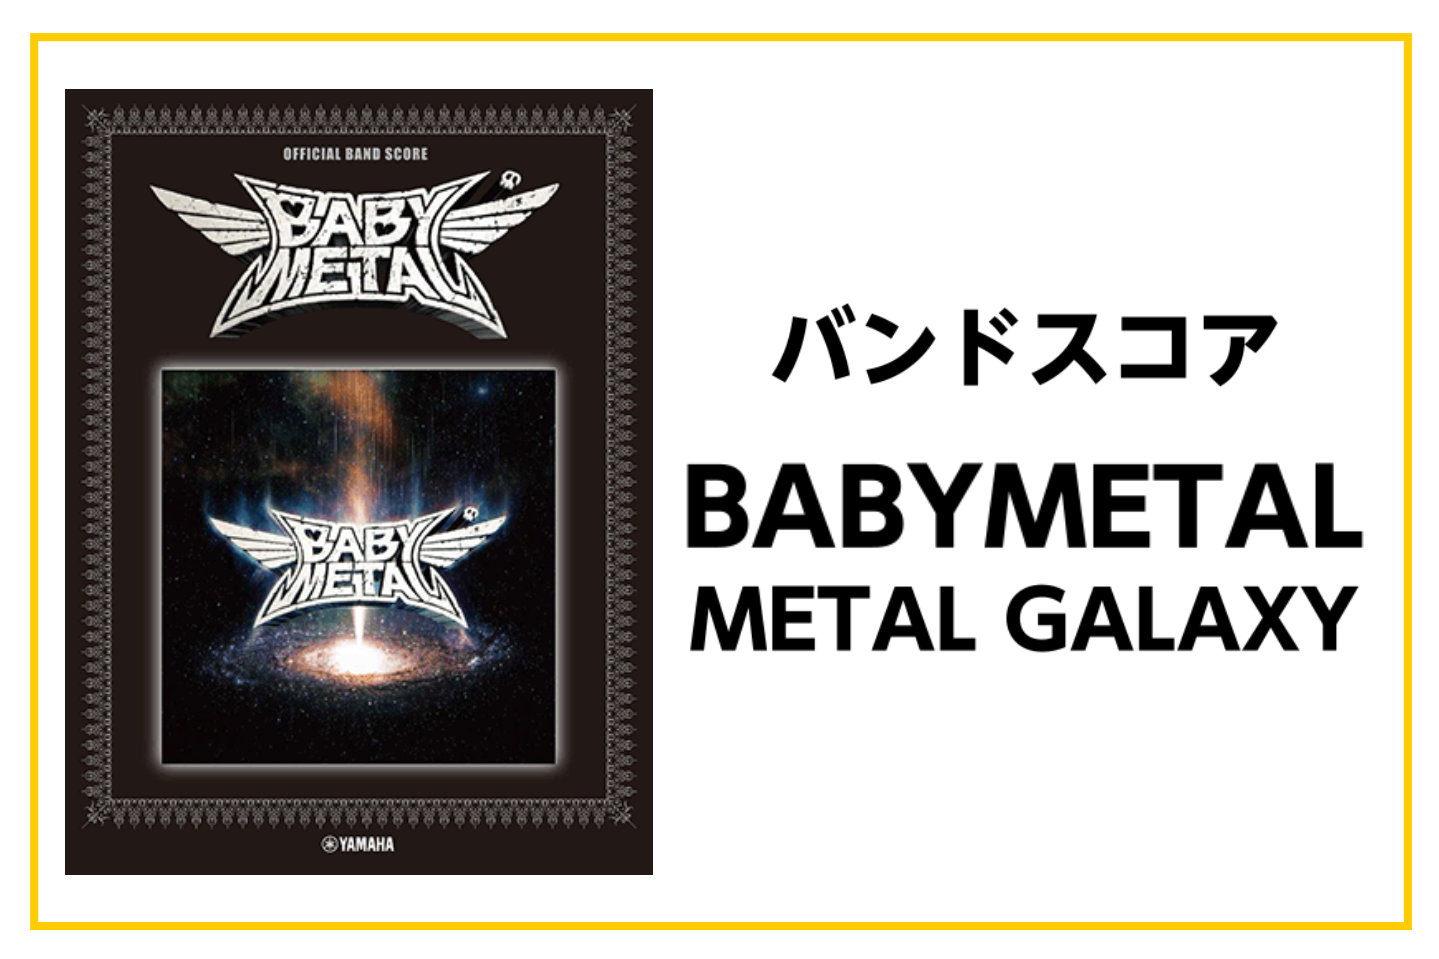 バンドスコア Babymetal Metal Galaxy オフィシャルバンドスコア入荷 小倉リバーウォーク店 店舗情報 島村楽器